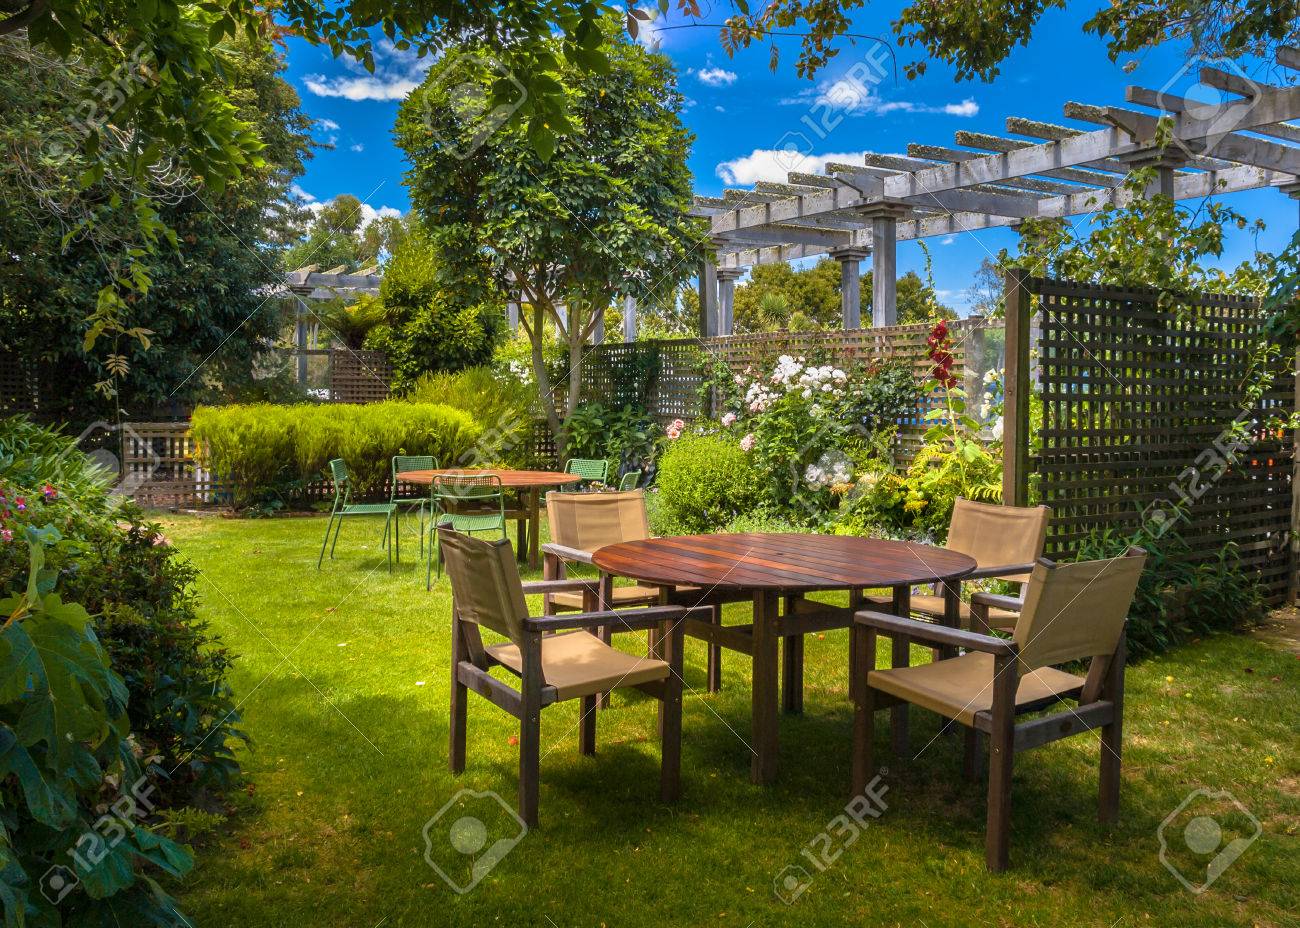 accueil cour avec table de jardin sous le soleil d un jardin luxuriant à l ombre des arbres